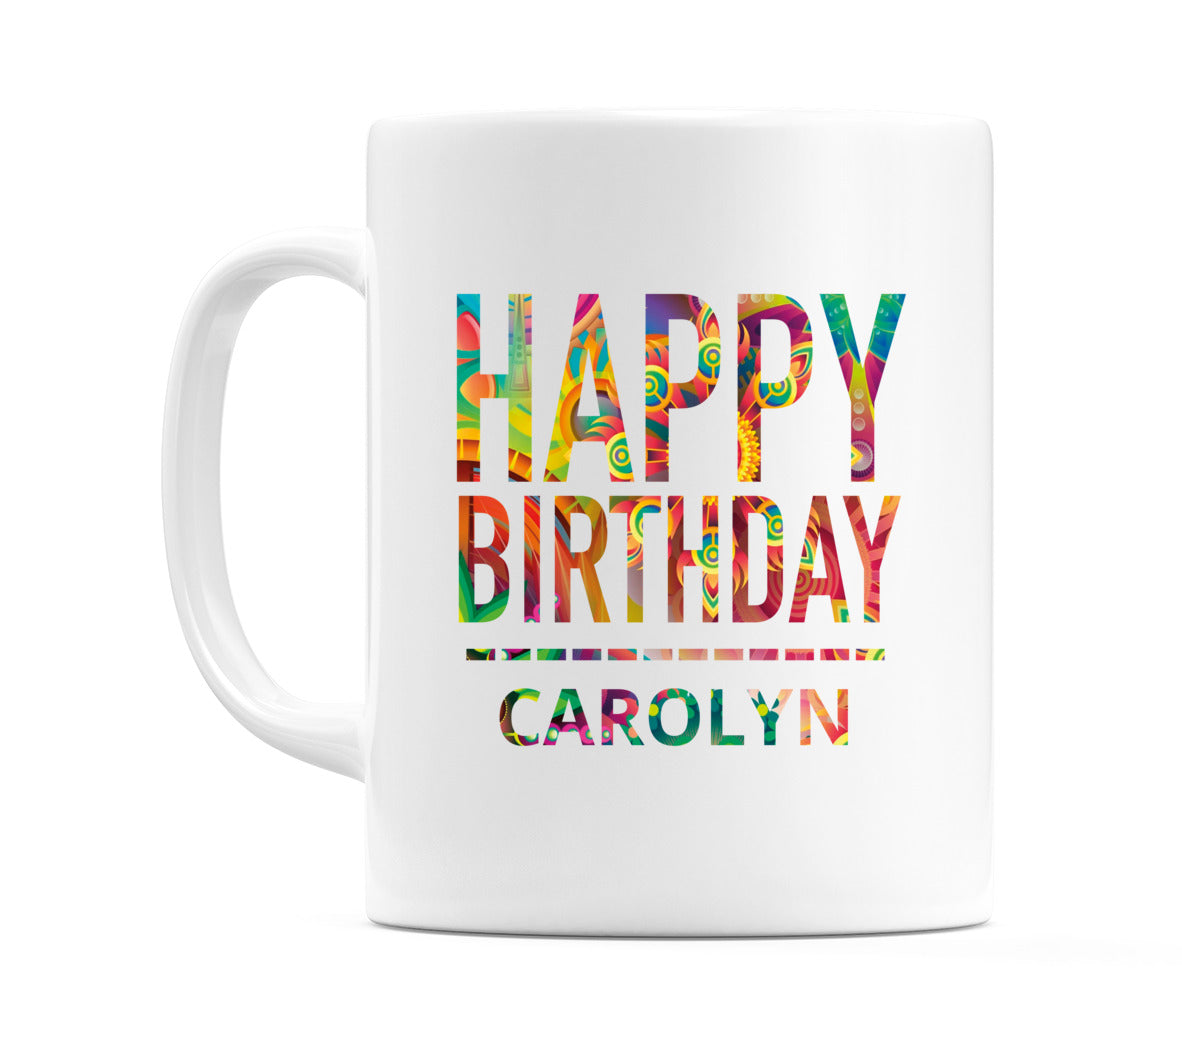 Happy Birthday Carolyn (Tie Dye Effect) Mug Cup by WeDoMugs